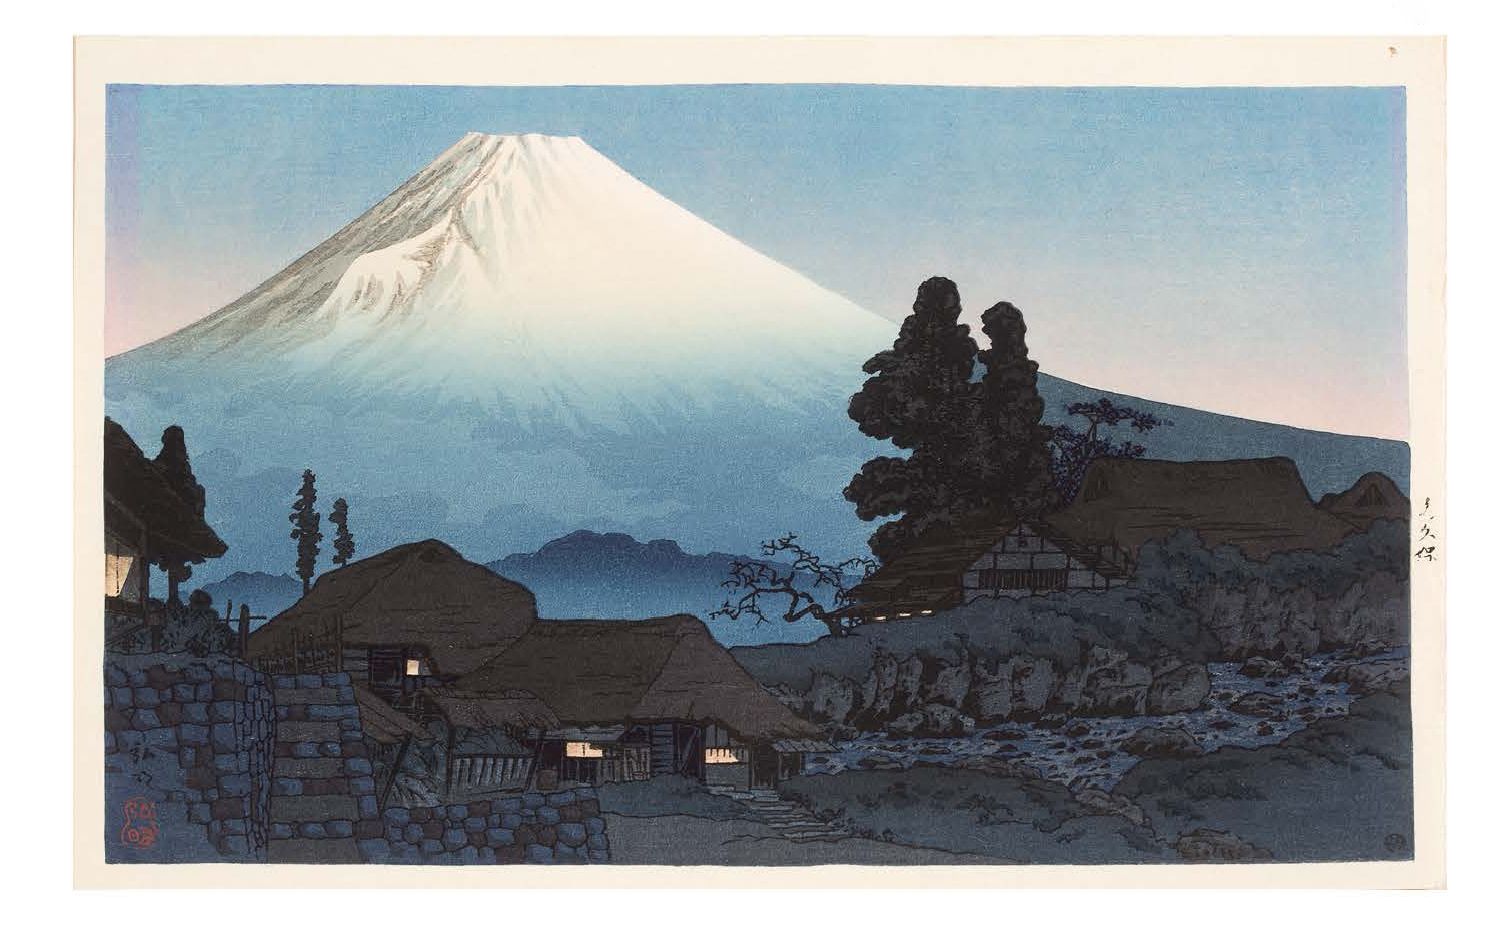 JAPON VERS 1938 Berg Fuji von Mizukubo aus
Druck mit der Darstellung Der Berg Fu&hellip;